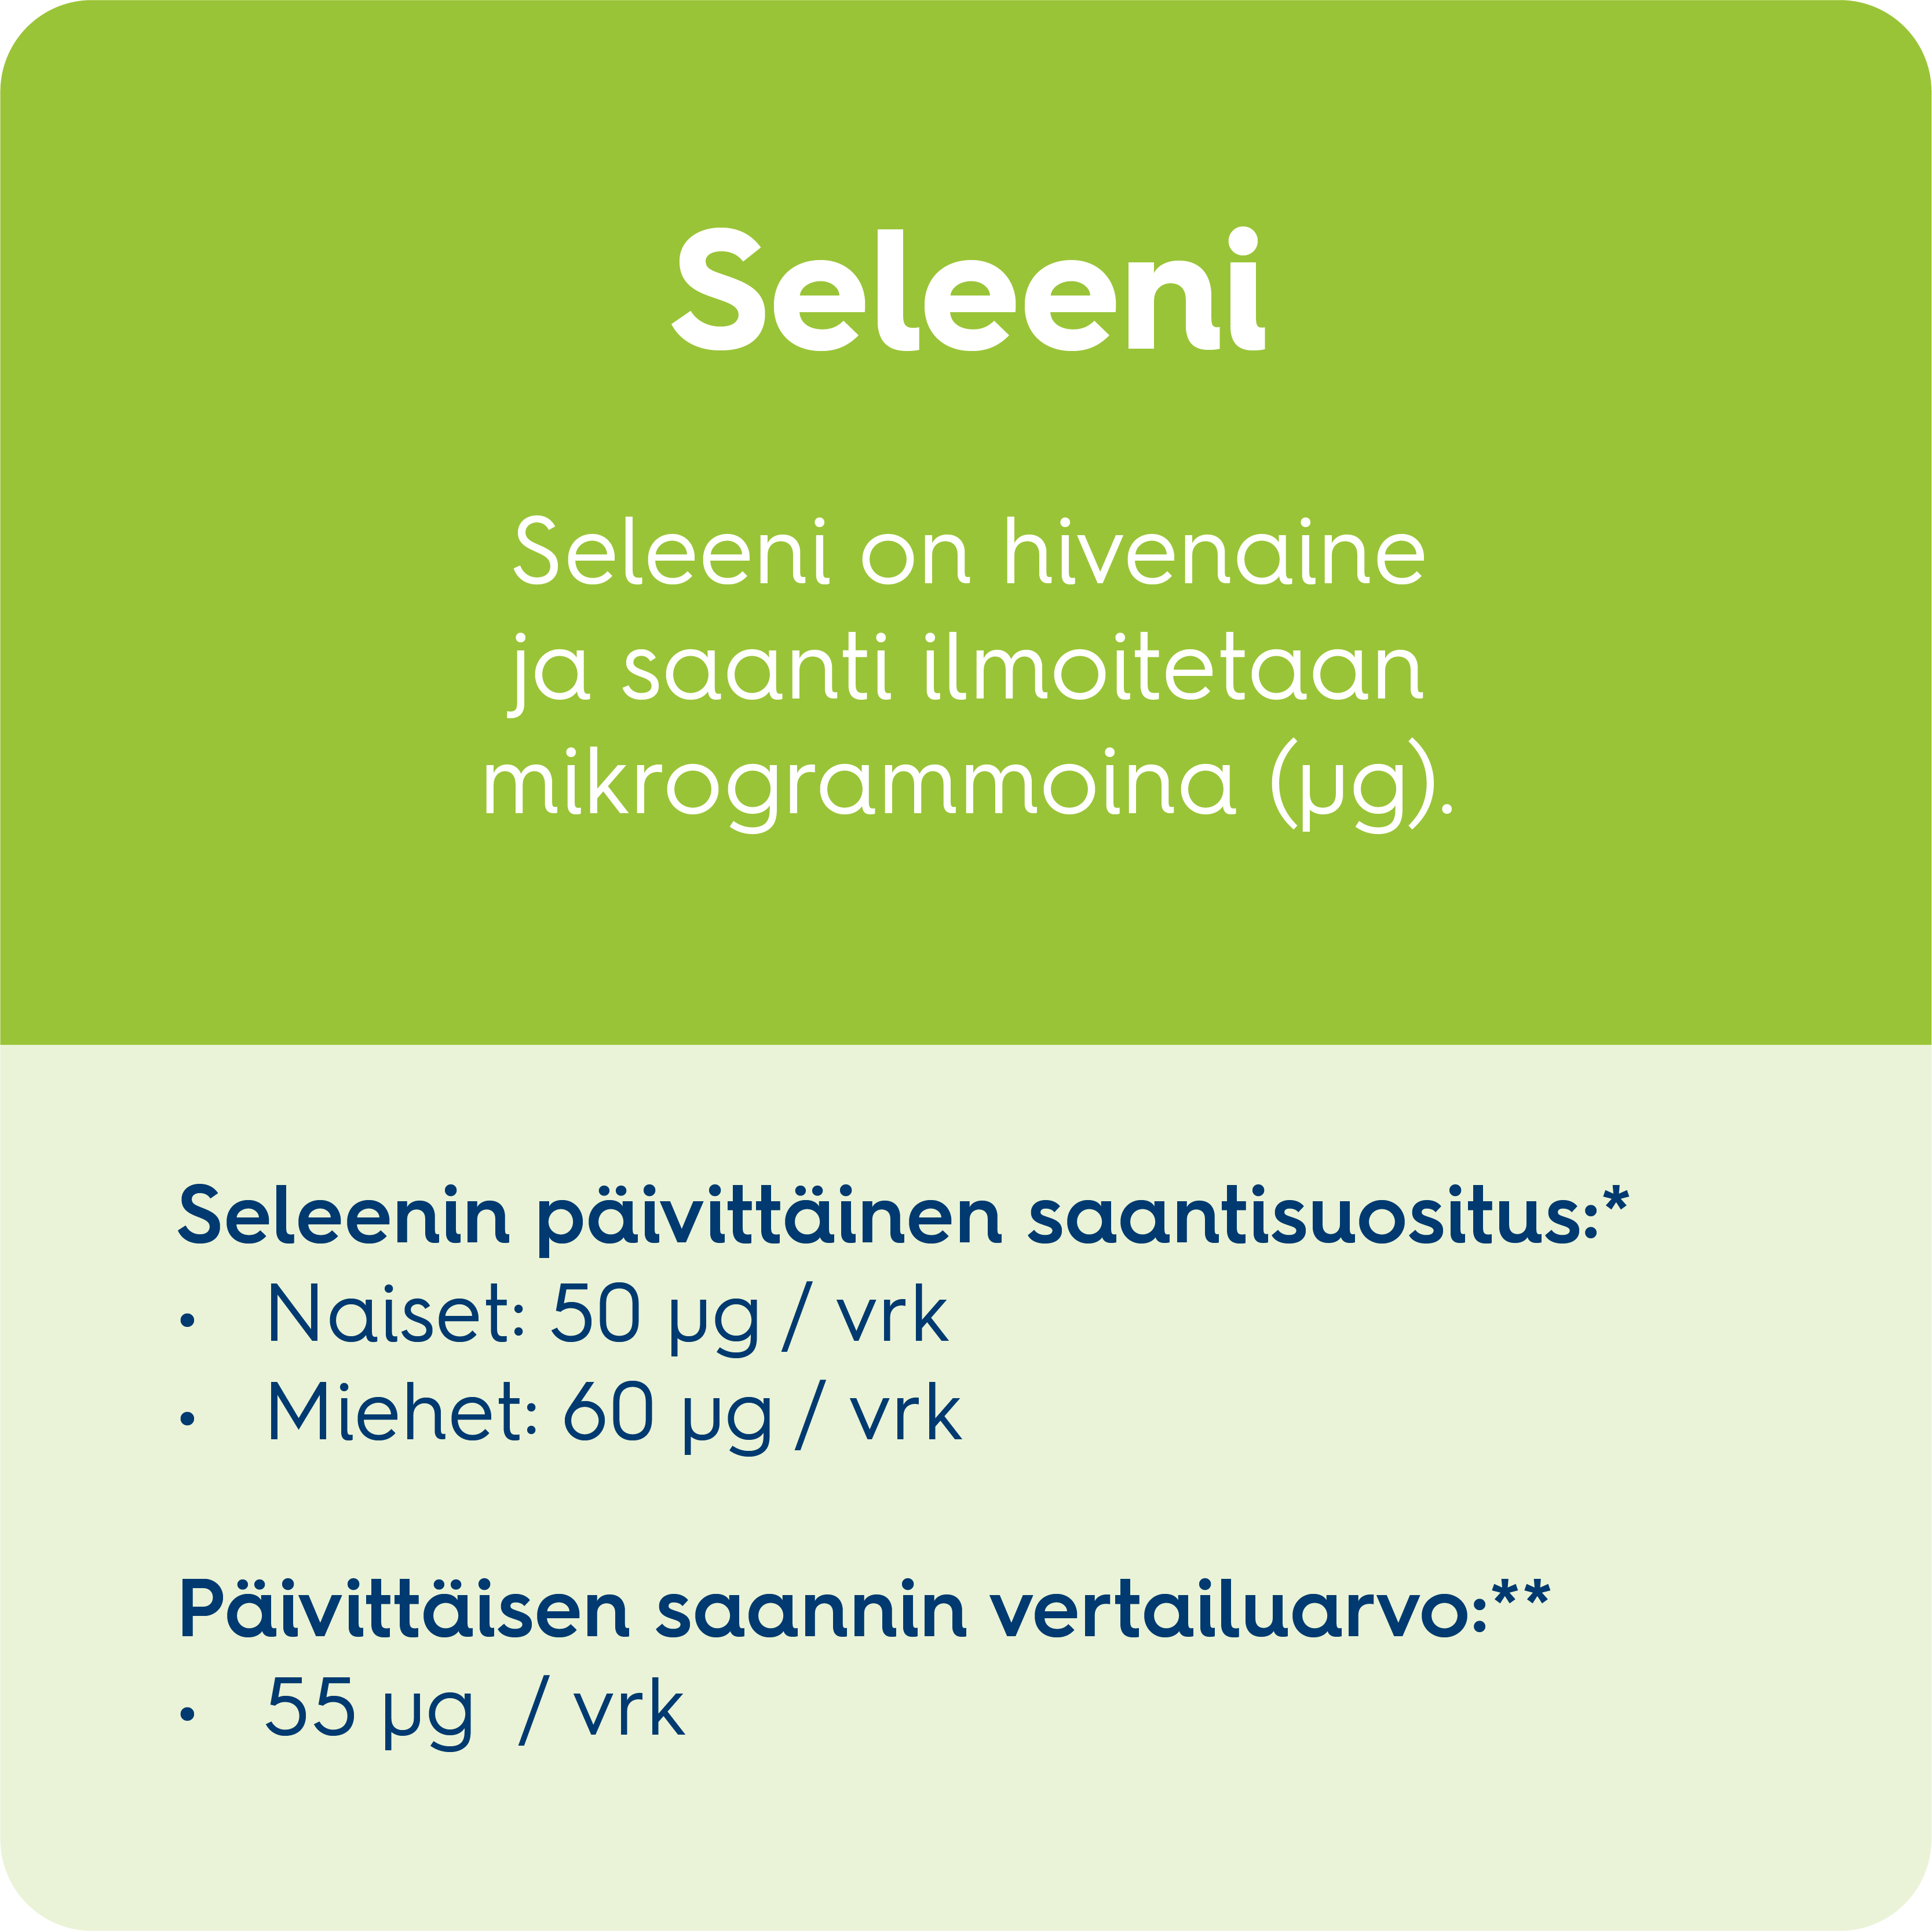 Tolonen_800x800_Kivennais_Seleeni.png